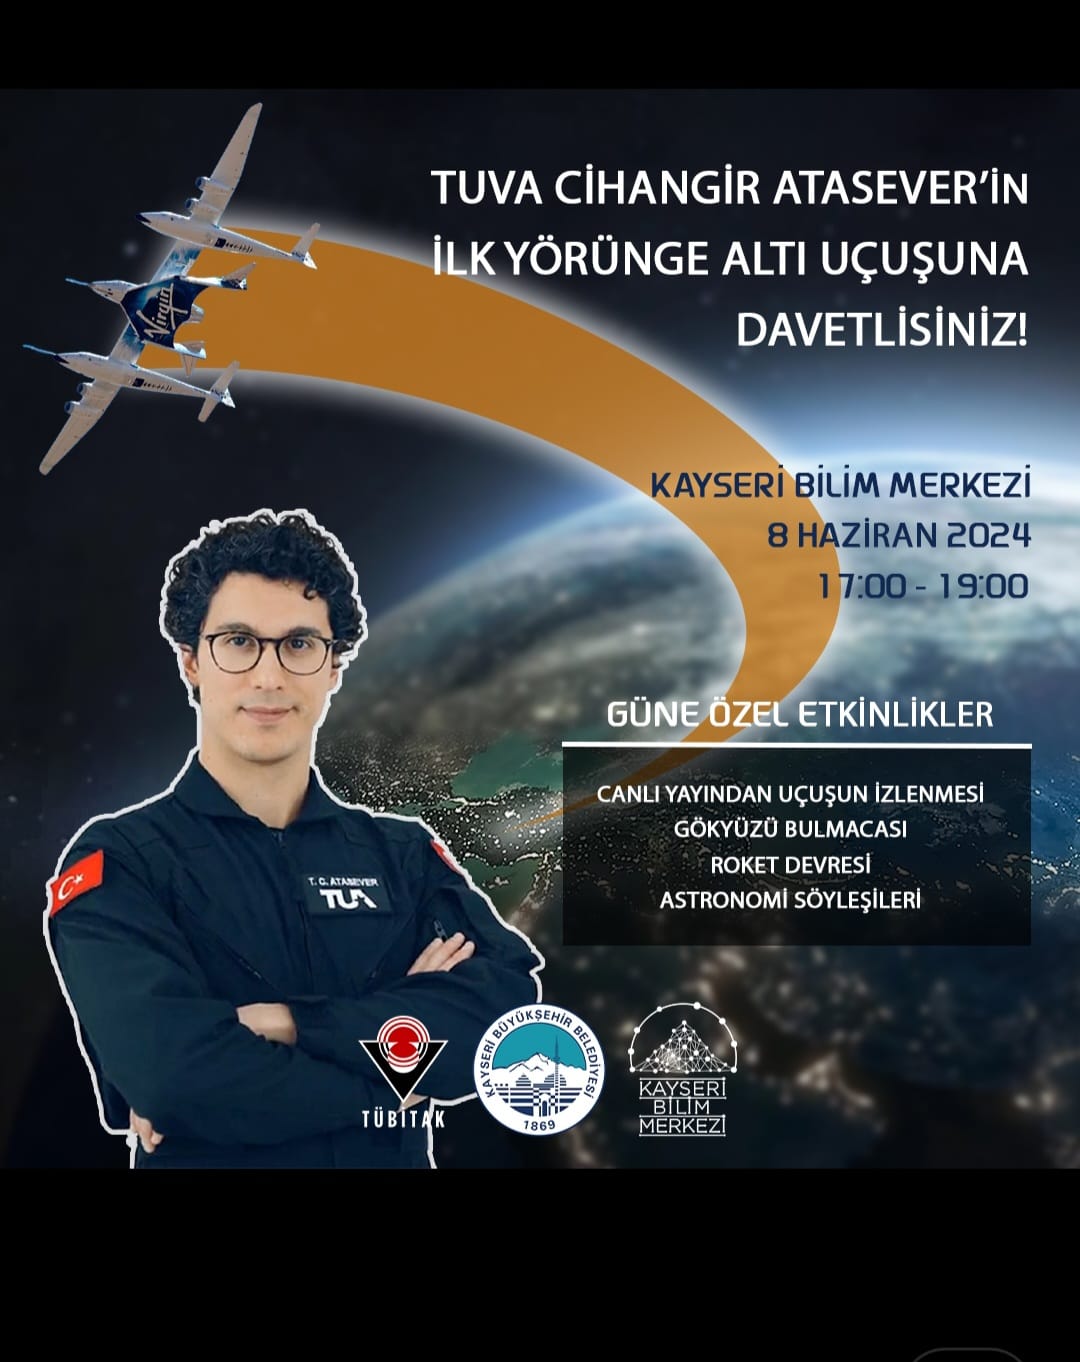 Büyükşehir, Uzay’a Gidecek İkinci Türk Astronot Atasever’in Uçuşunu Canlı Yayınlayacak